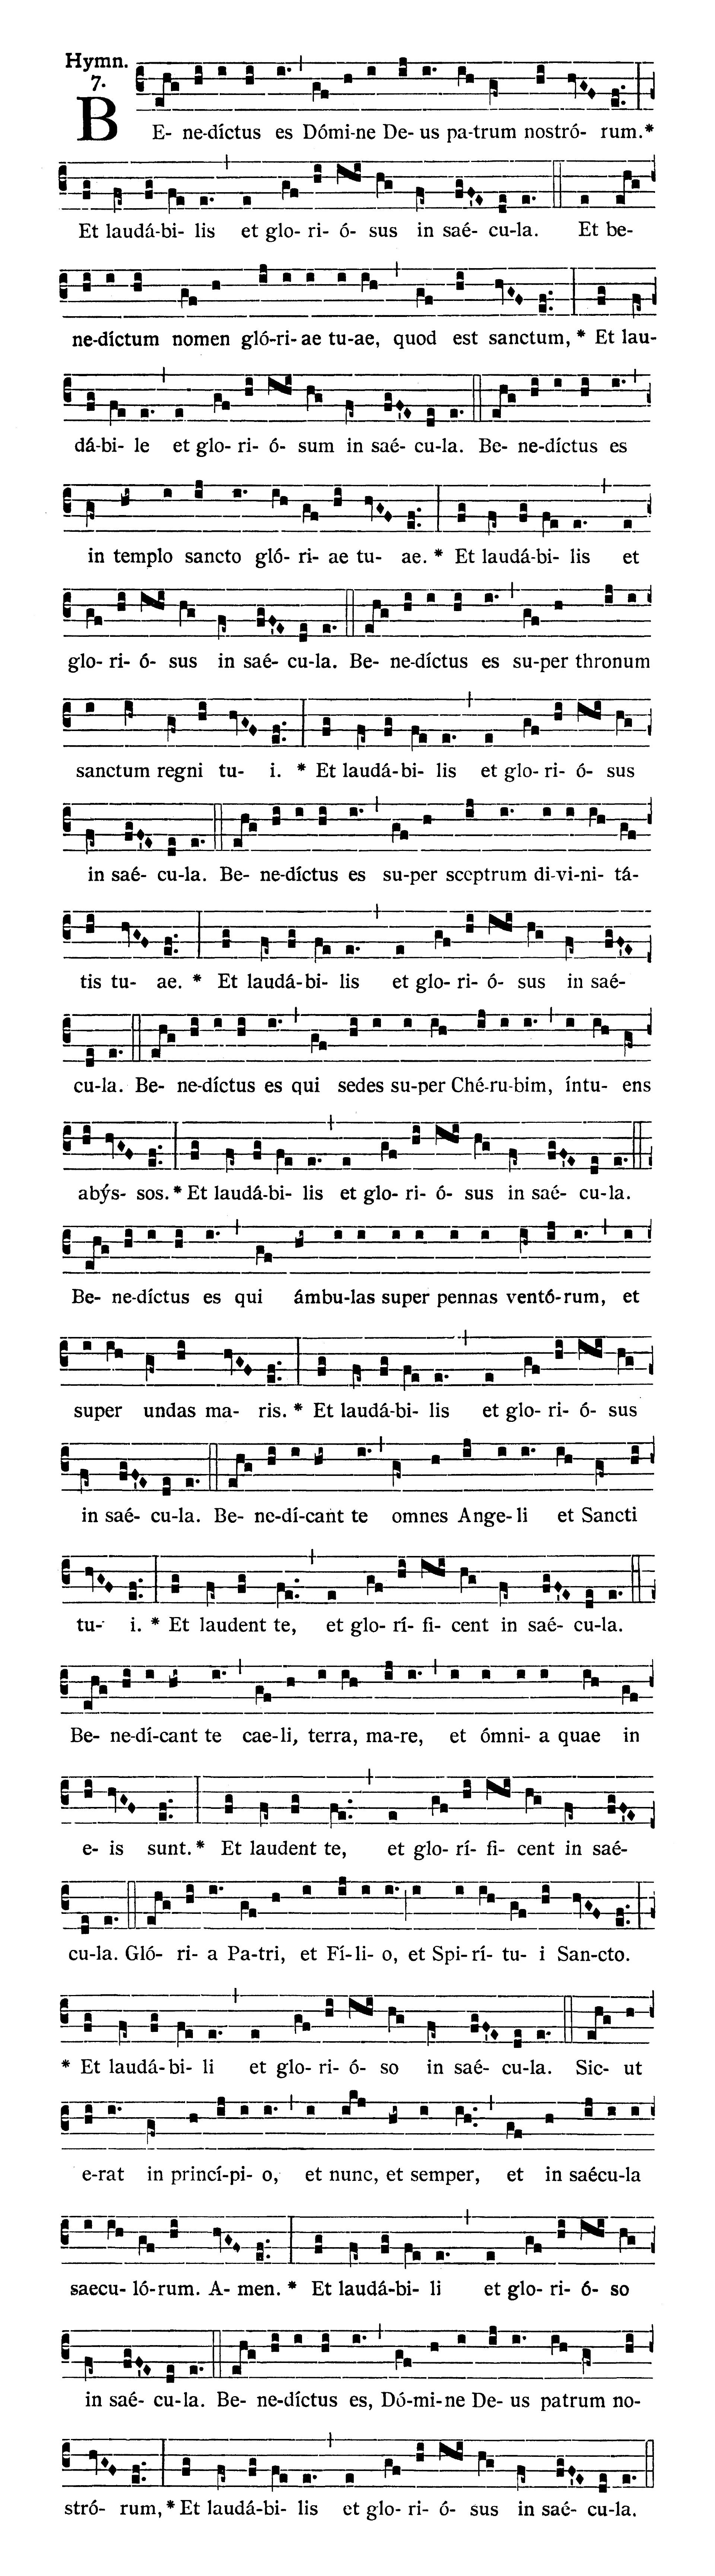 Sabbato Quatuor Temporum Quadragesimae (Sobota suchych dni Wielkiego Postu) - Hymnus (Benedictus es)